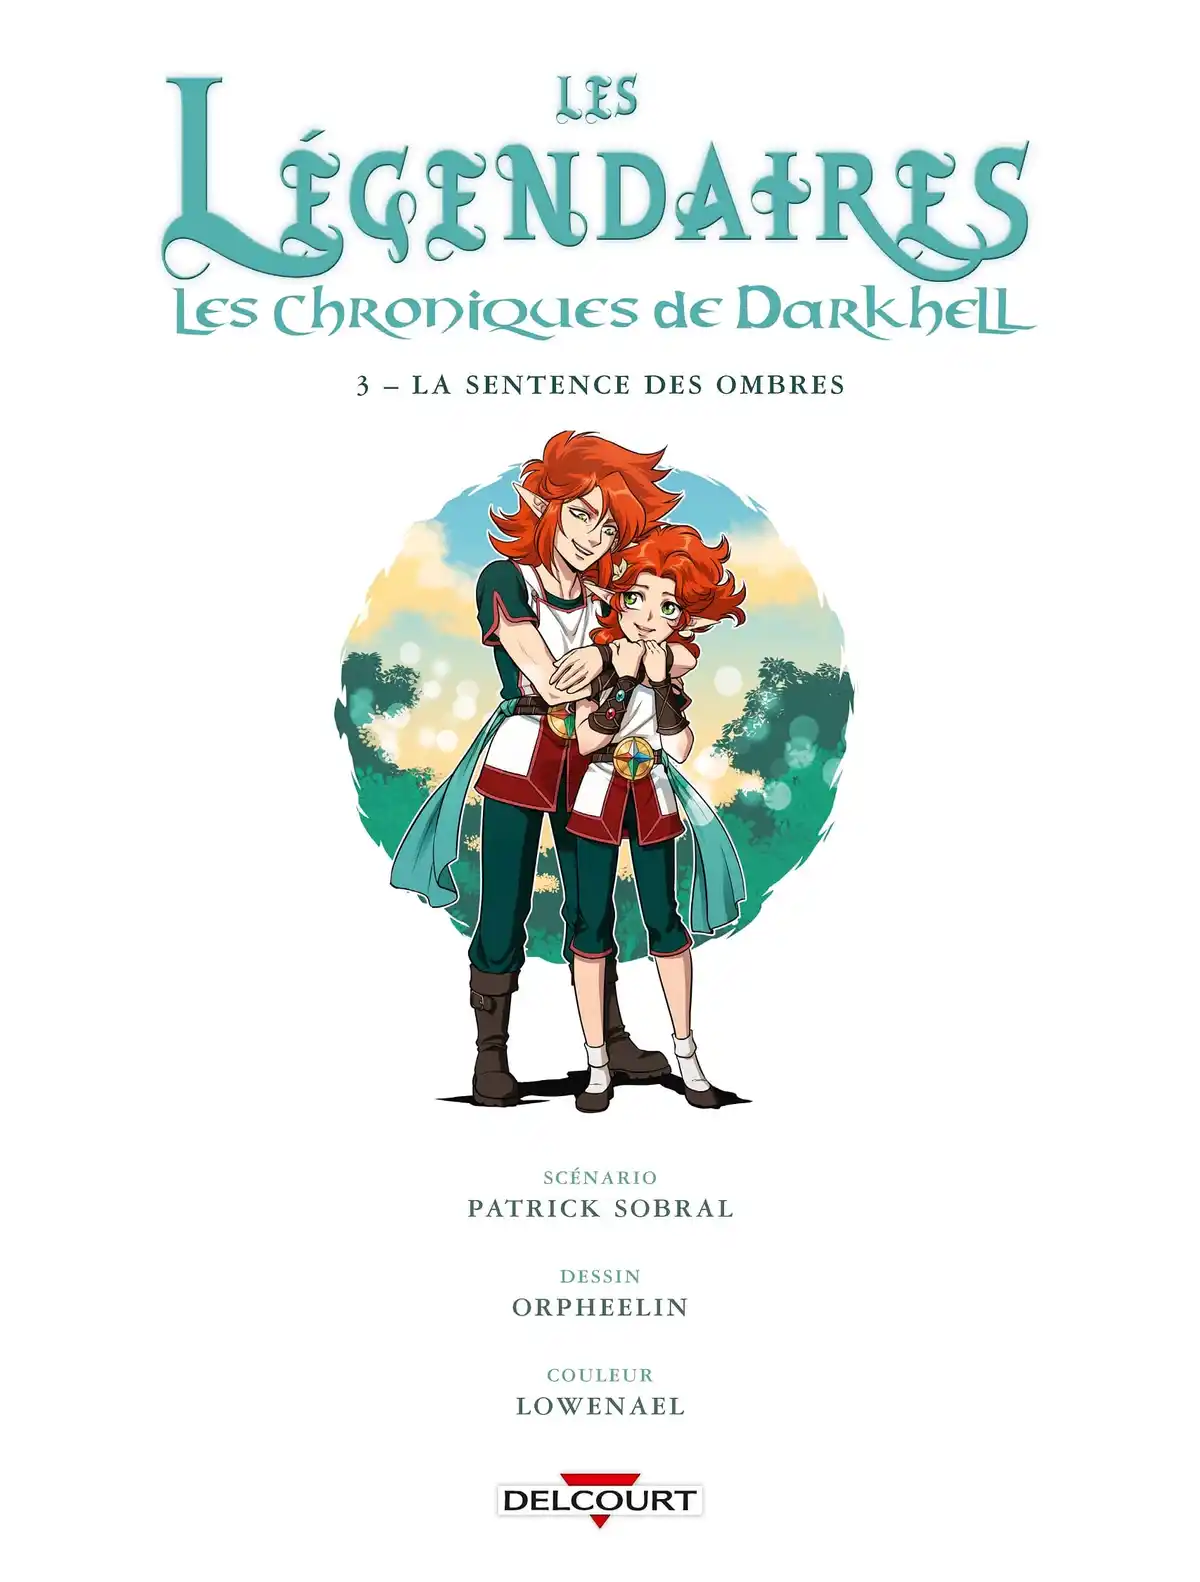 Les Légendaires – Les Chroniques de Darkhell Volume 3 page 2